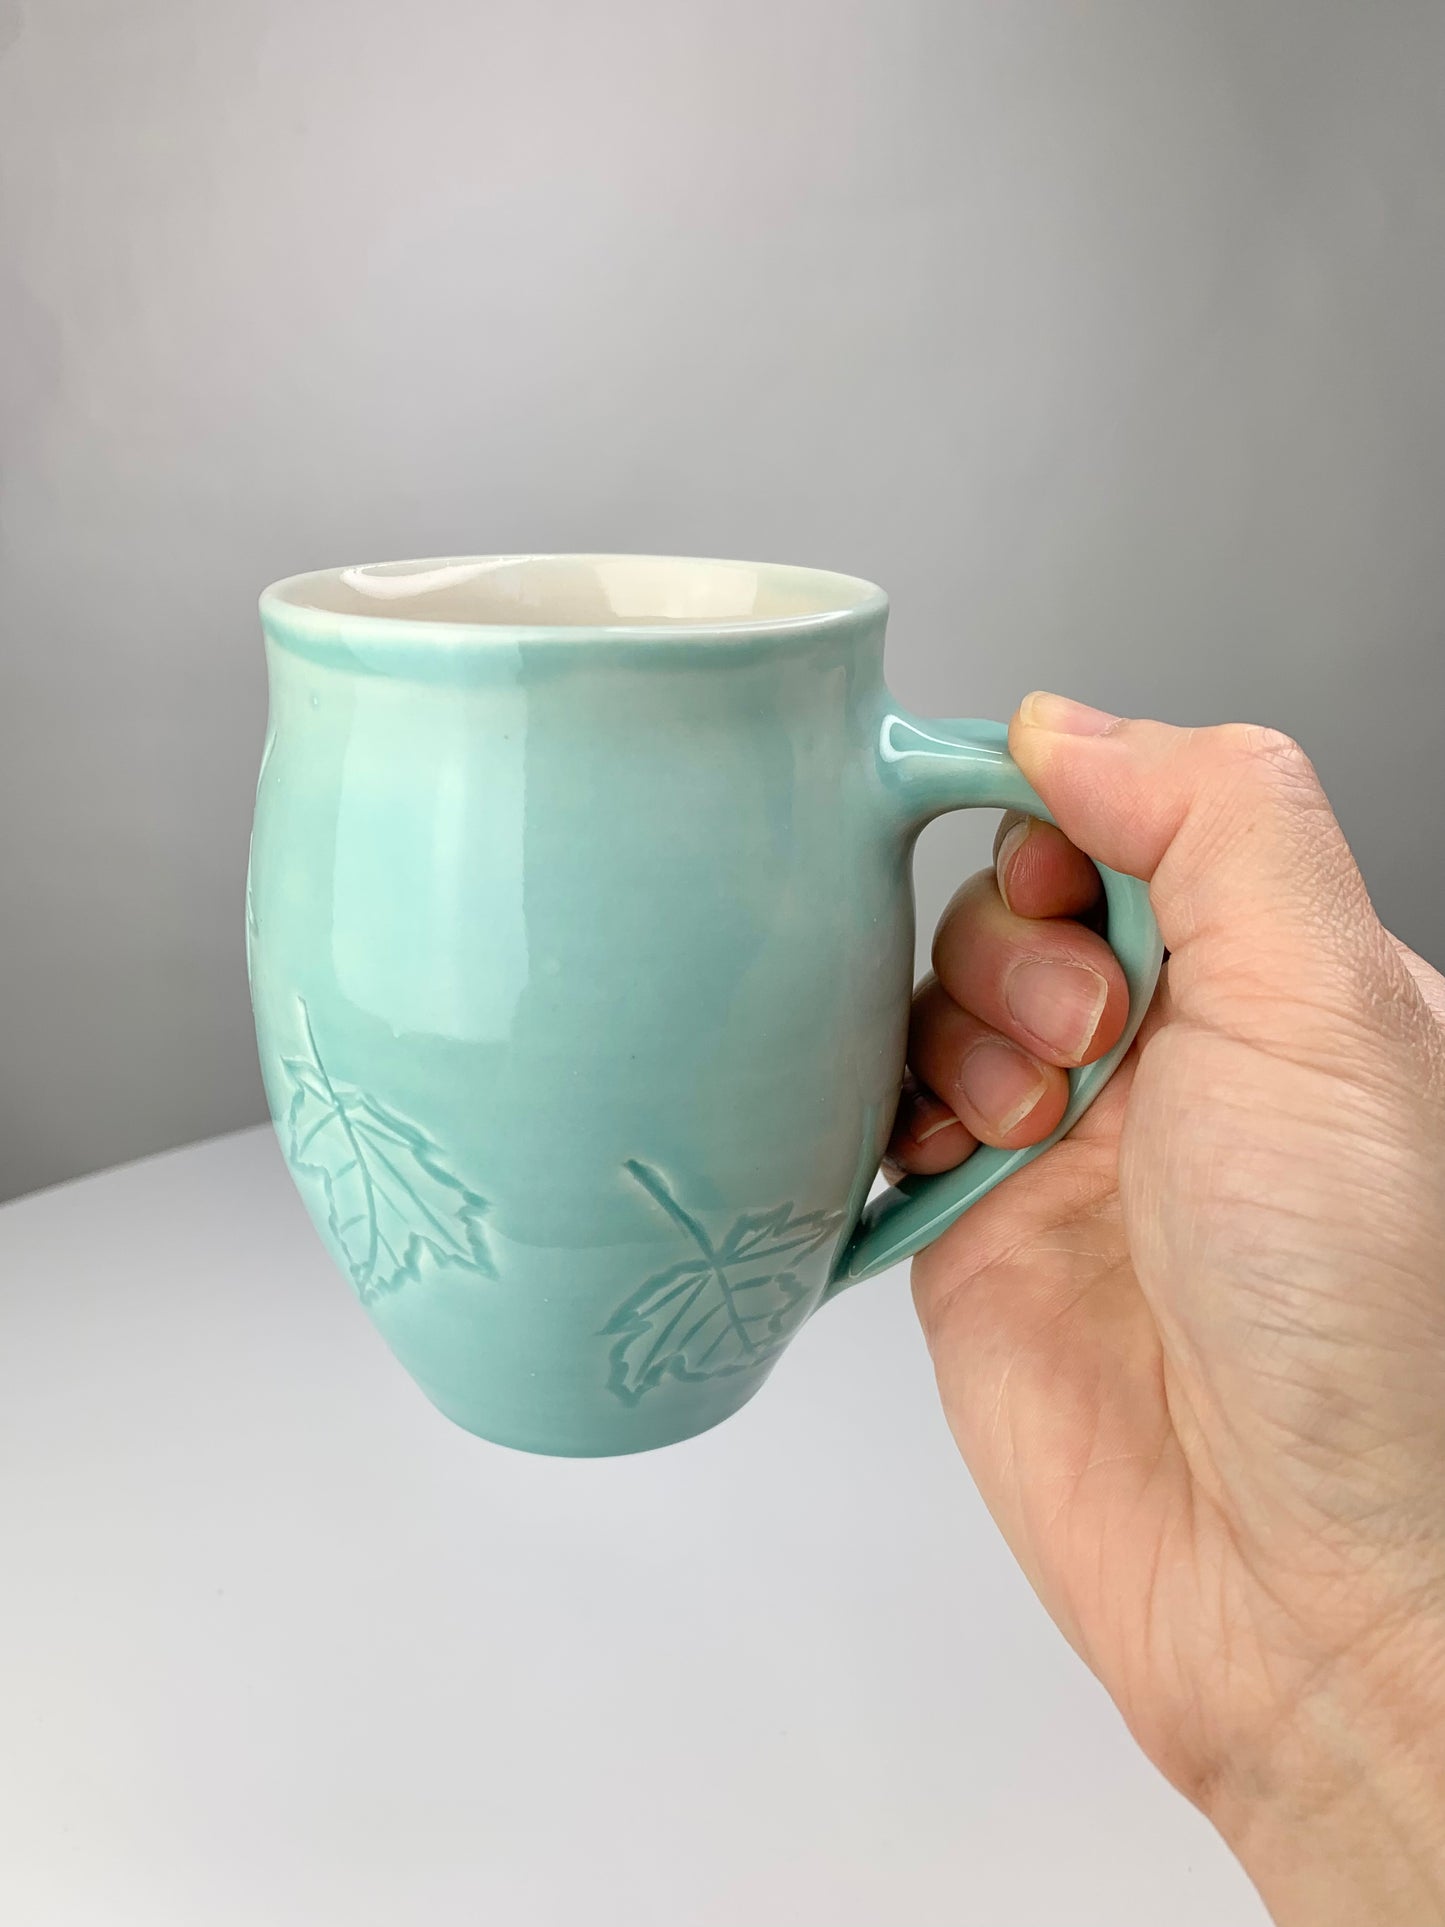 12 oz porcelain mug with carved maple leaf design in turquoise